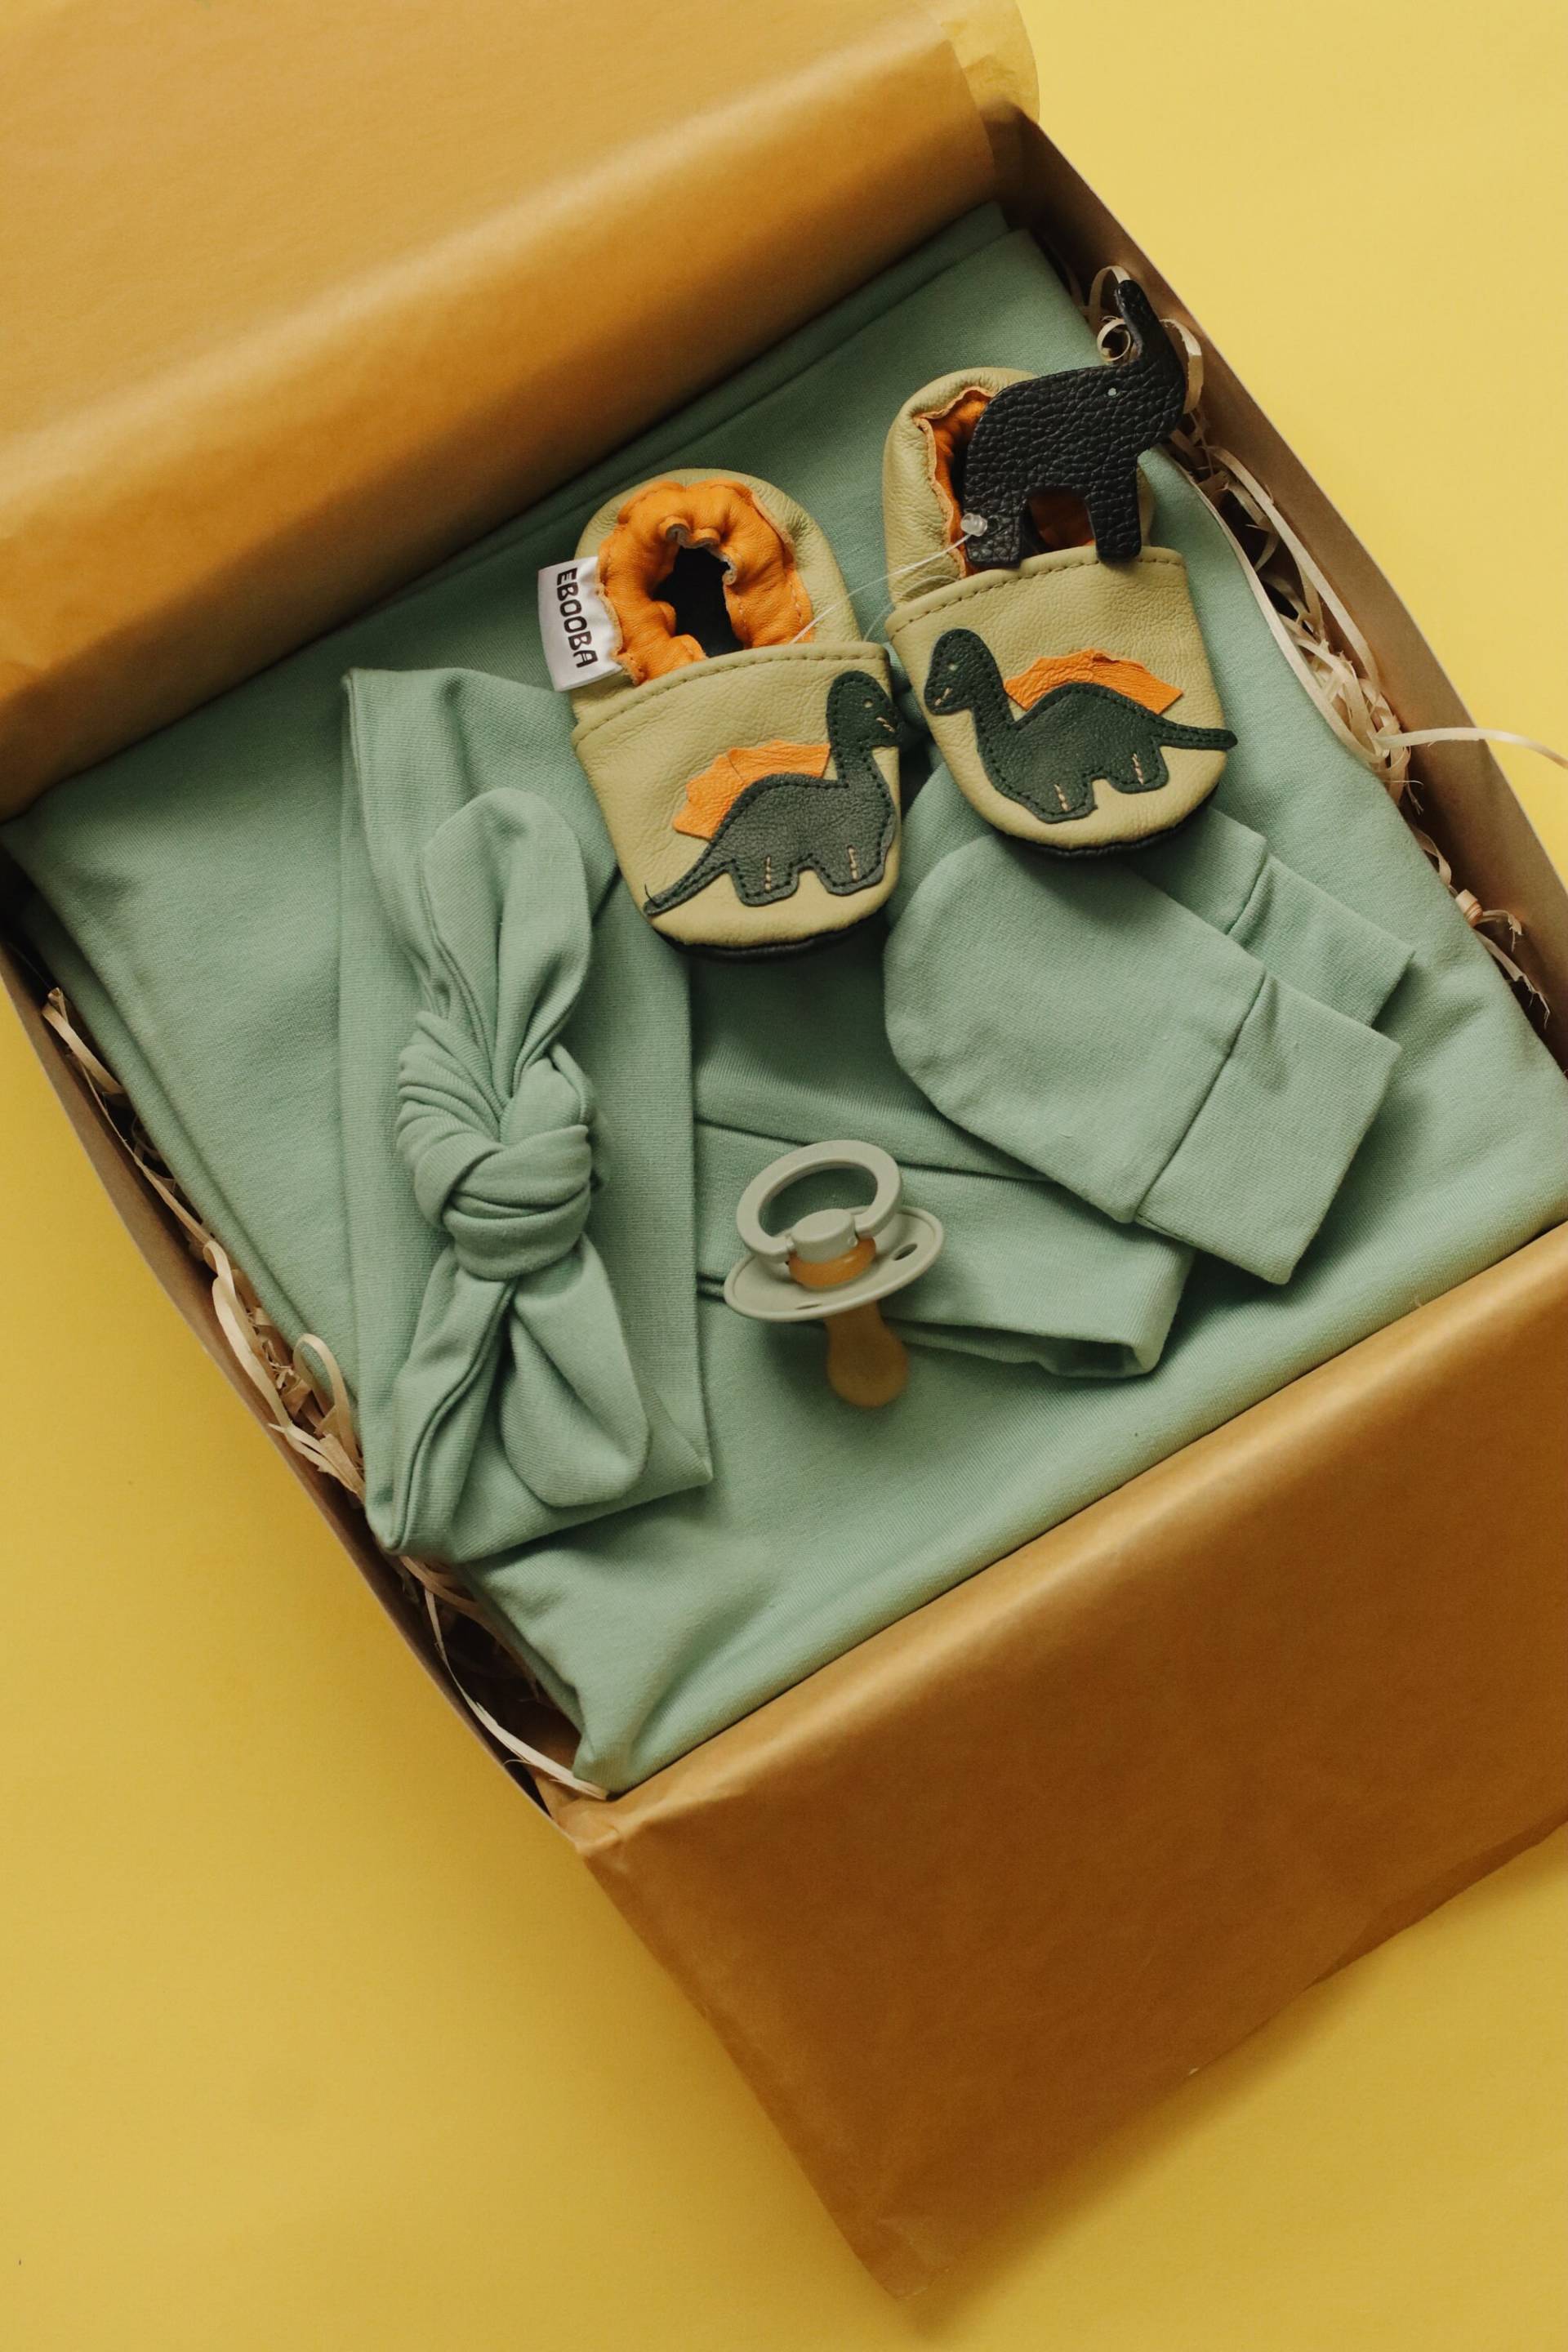 Neugeborenen Geschenkkorb - Baby Swaddle Set Olive Geschenkset Neues Geschenk Box Mädchen Junge Gender Neutral von RipkaStore